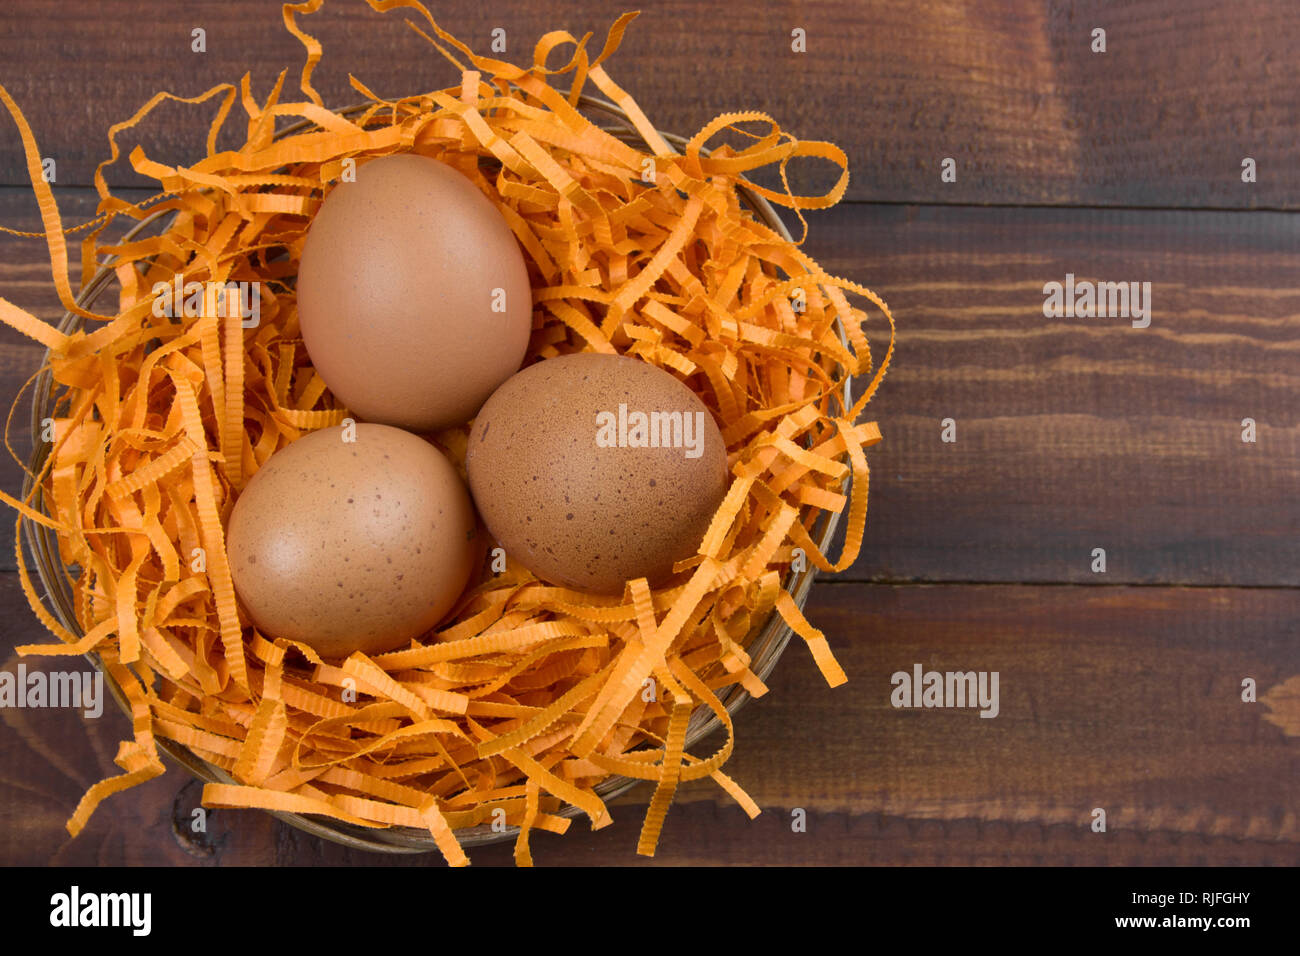 Vista superior marrón de huevos en un nido decorativo sobre un fondo de madera Foto de stock